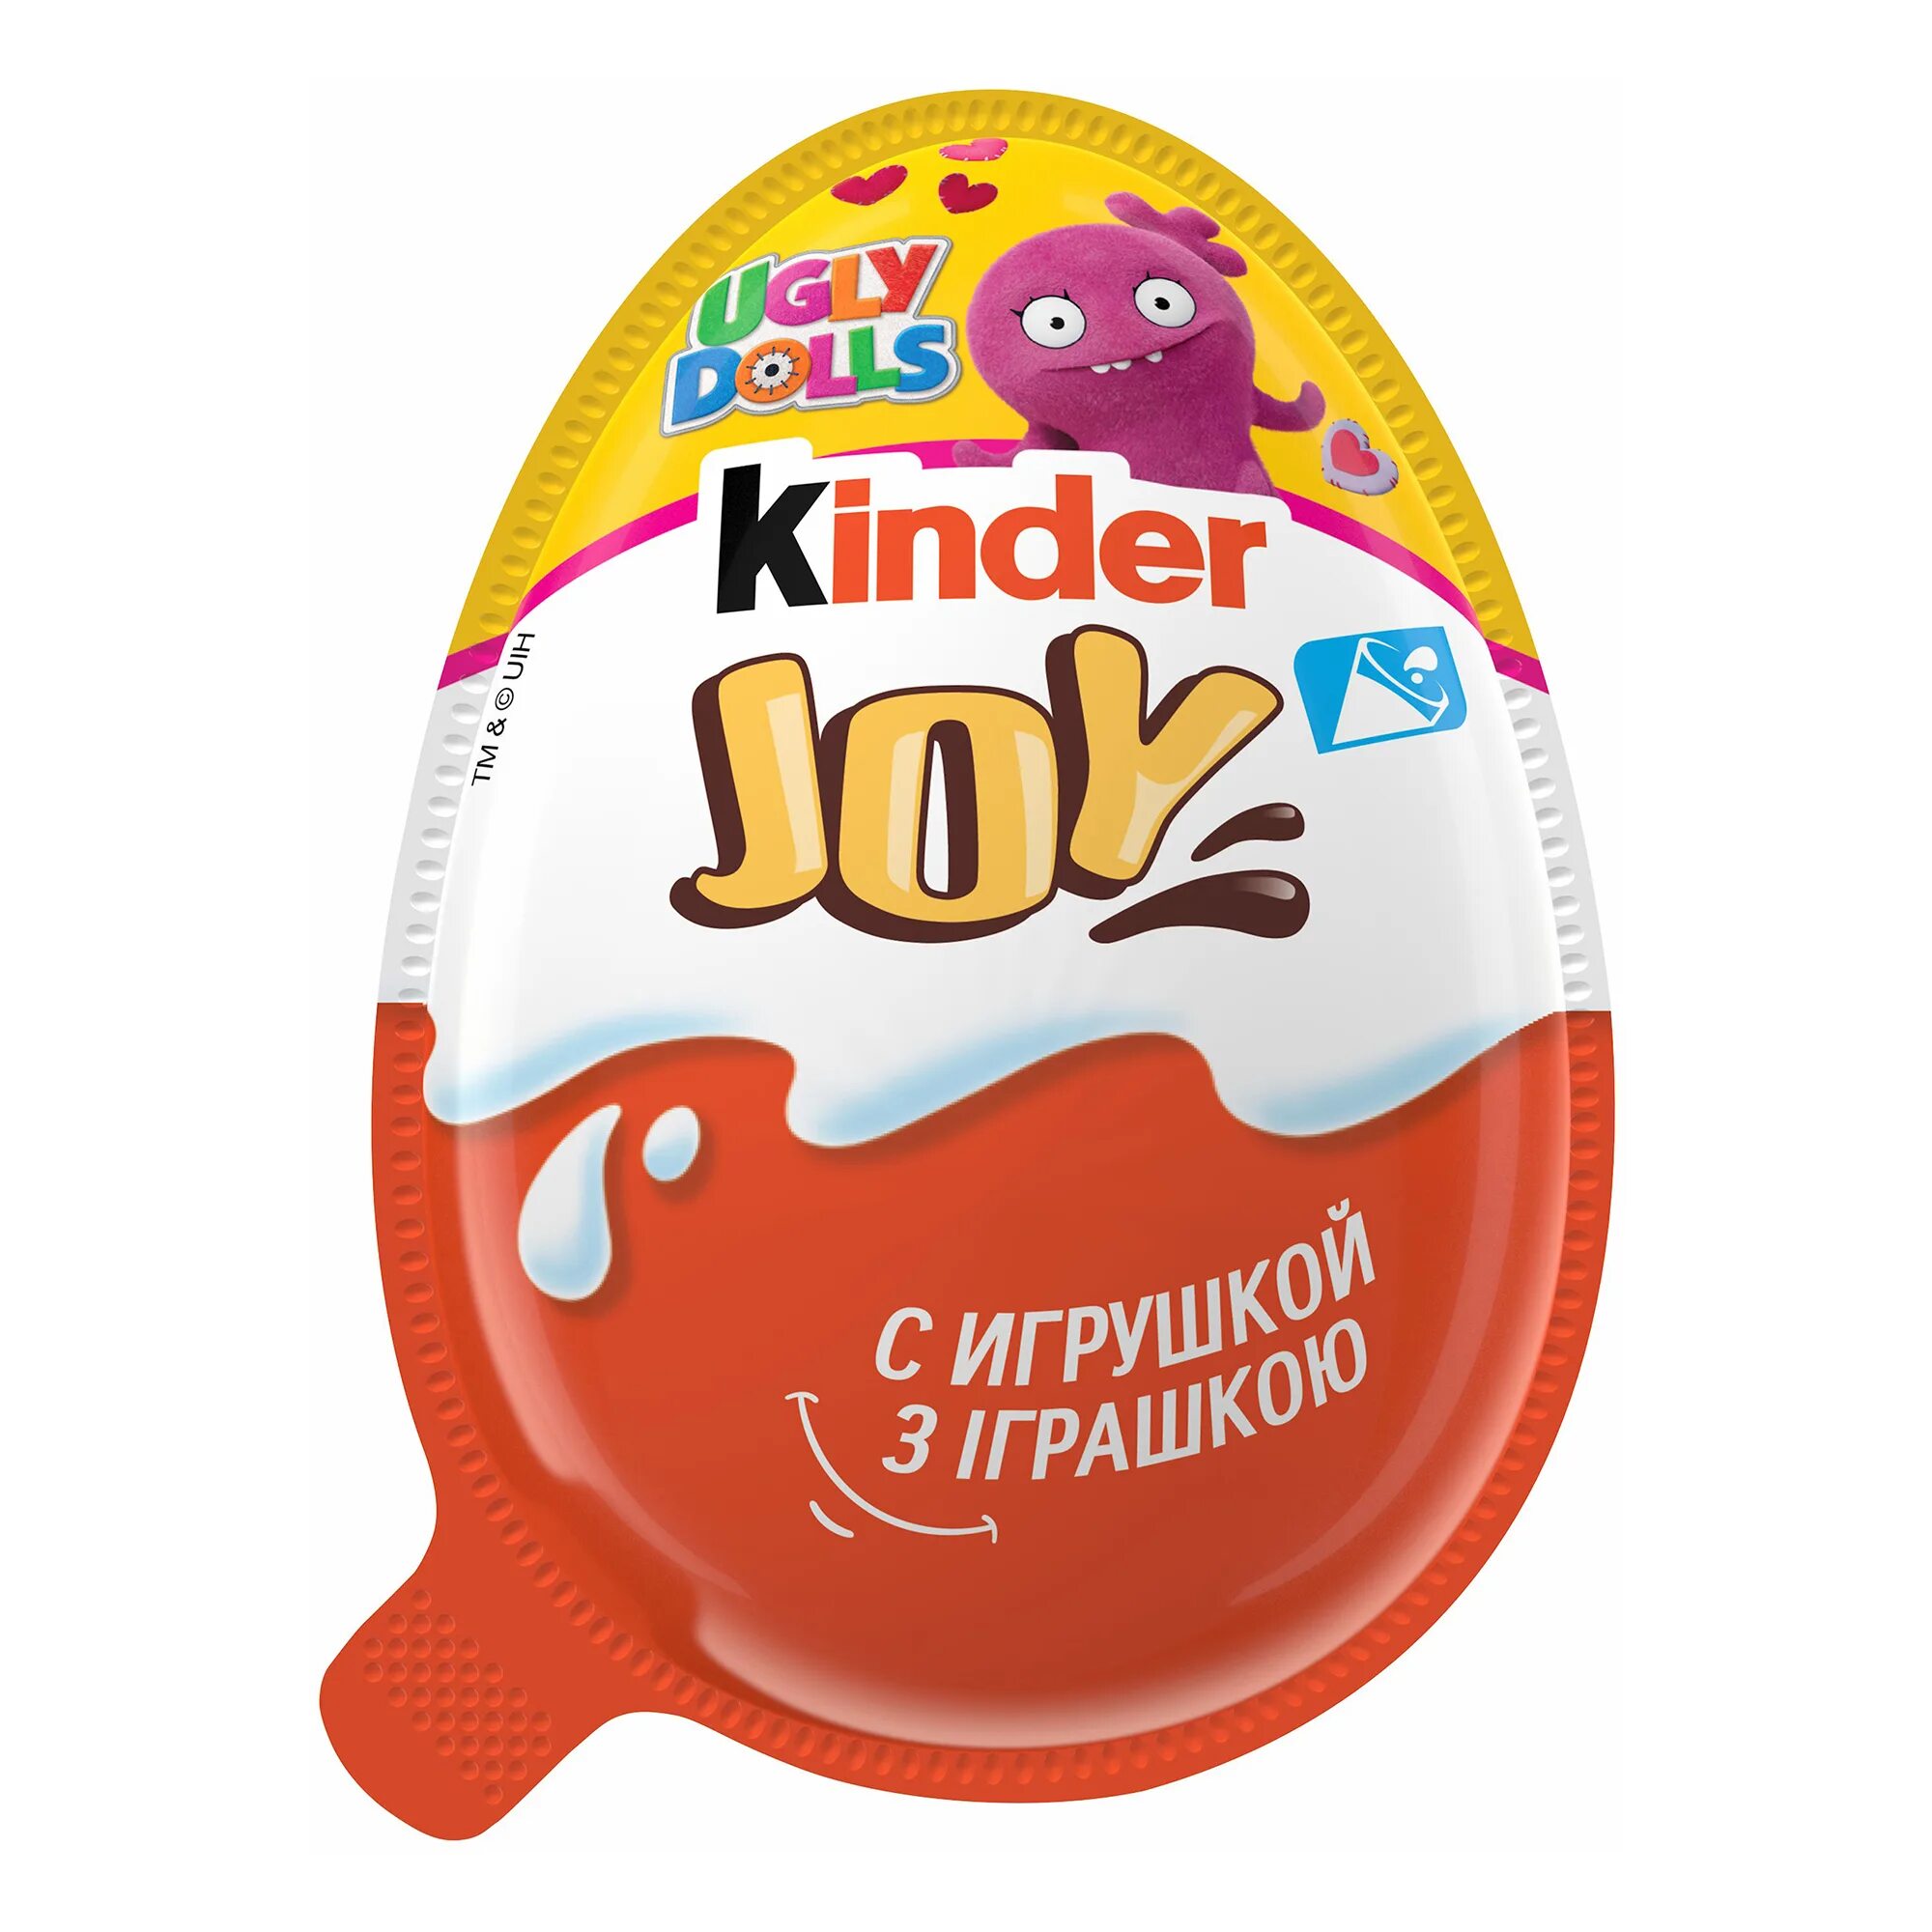 Яйцо с игрушкой купить. Яйцо шоколадное kinder Джой 20г. Яйцо kinder Joy шоколадное, 20 г. Kinder Joy (Киндер Джой) для мальчиков. Uglydolls Киндер Джой.